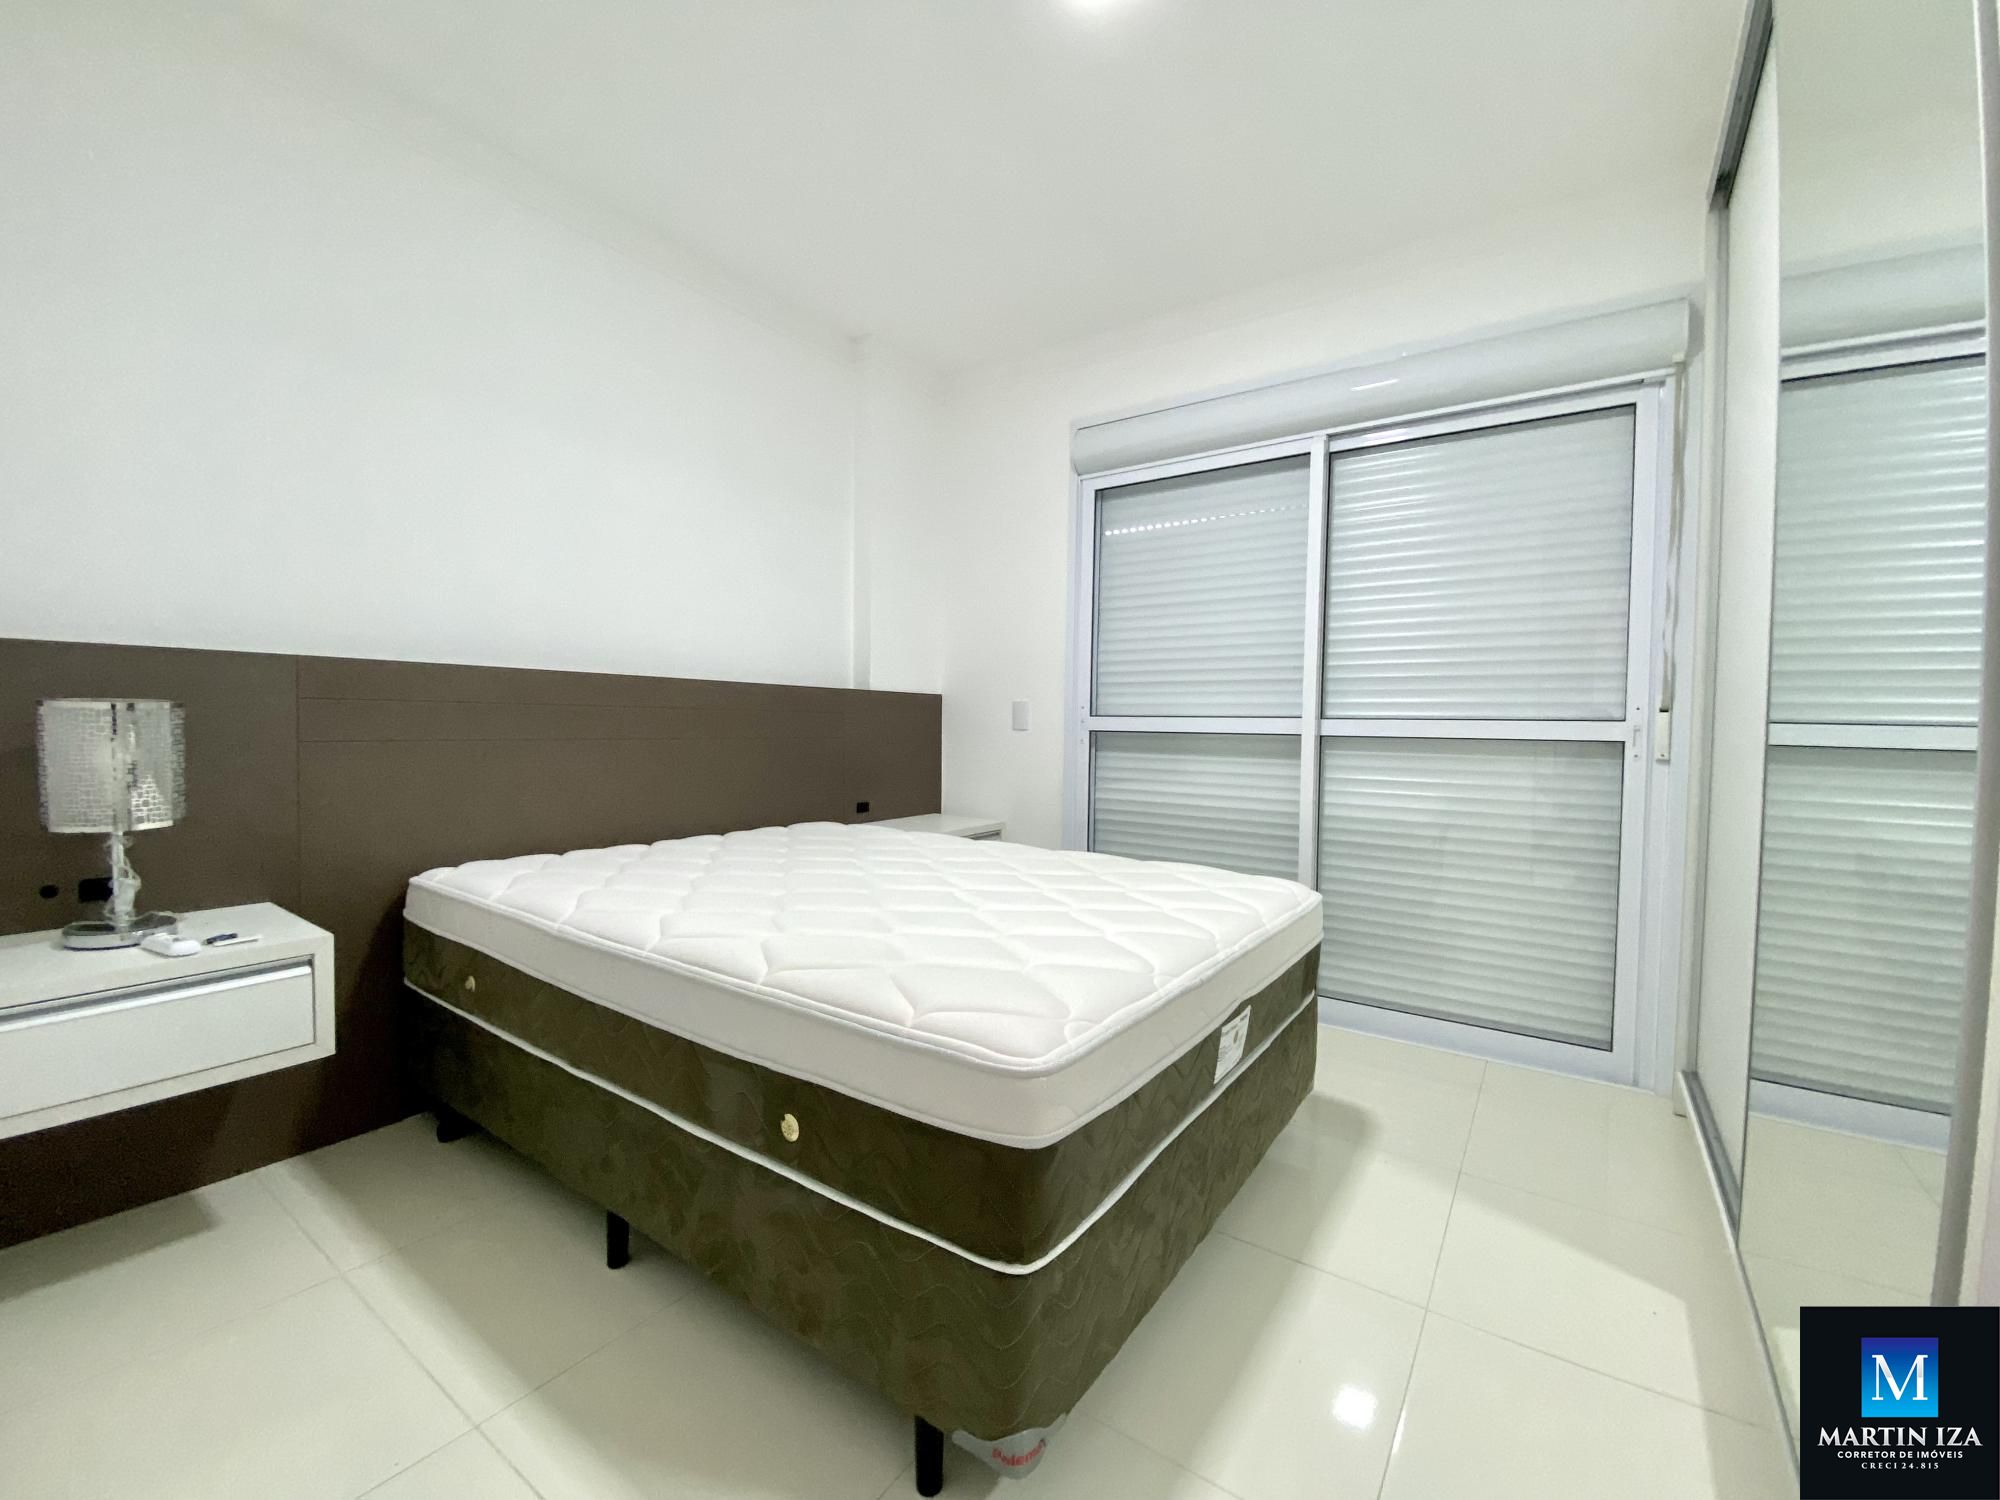 Apartamento com 2 Dormitórios para alugar, 85 m² por R$ 450,00